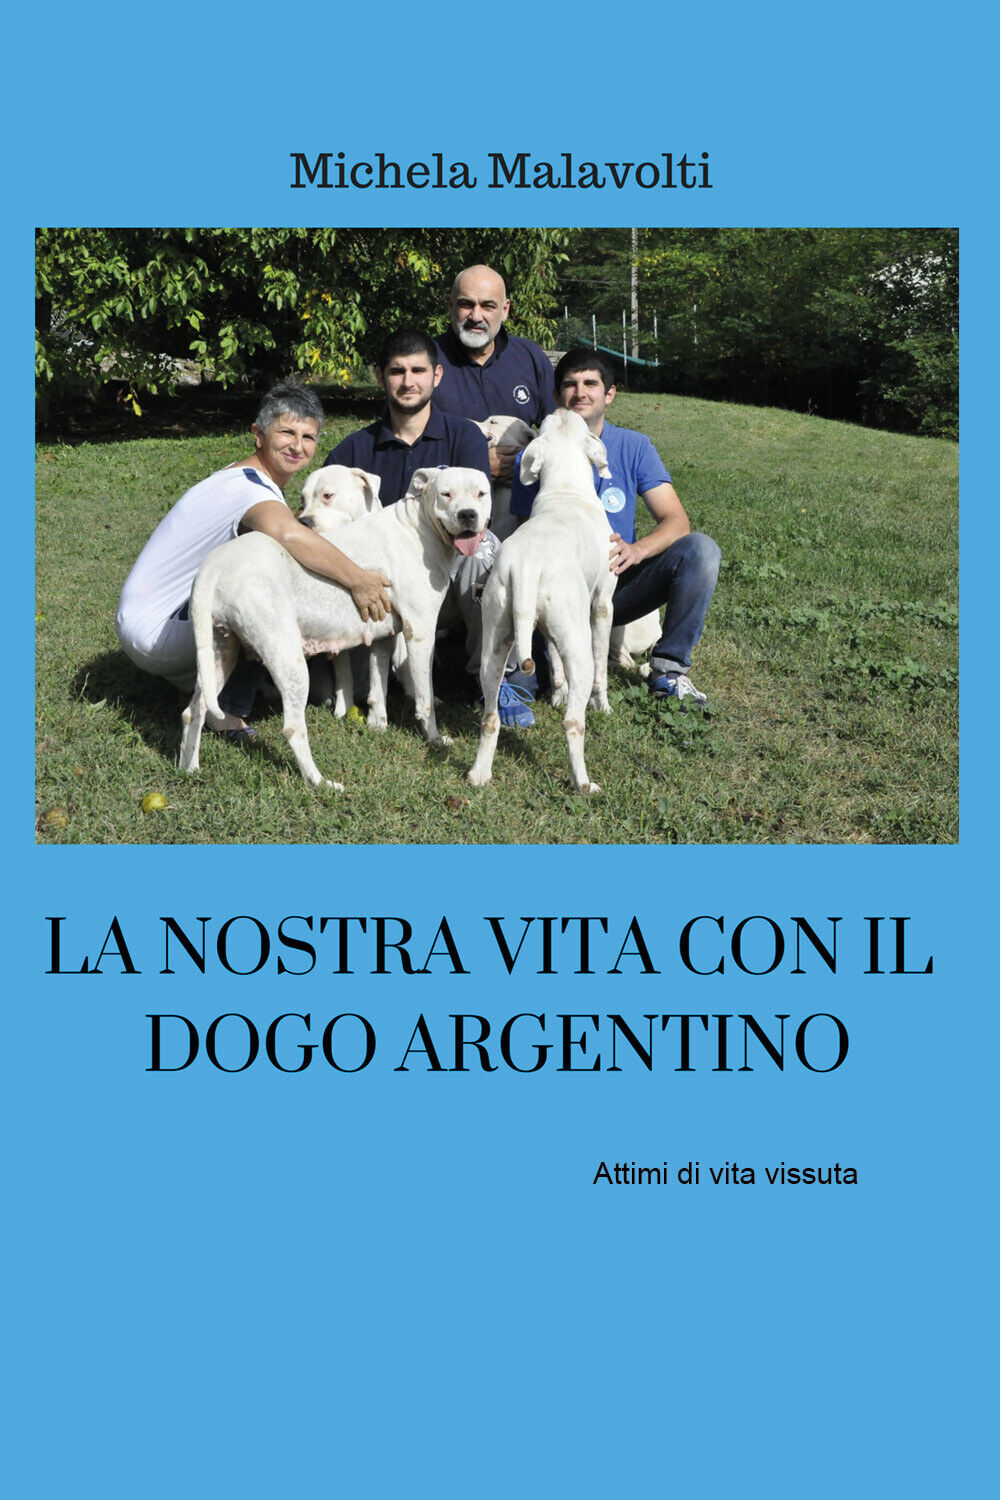 La nostra vita con il dogo argentino  - Michela Malavolti,  2019 - ER